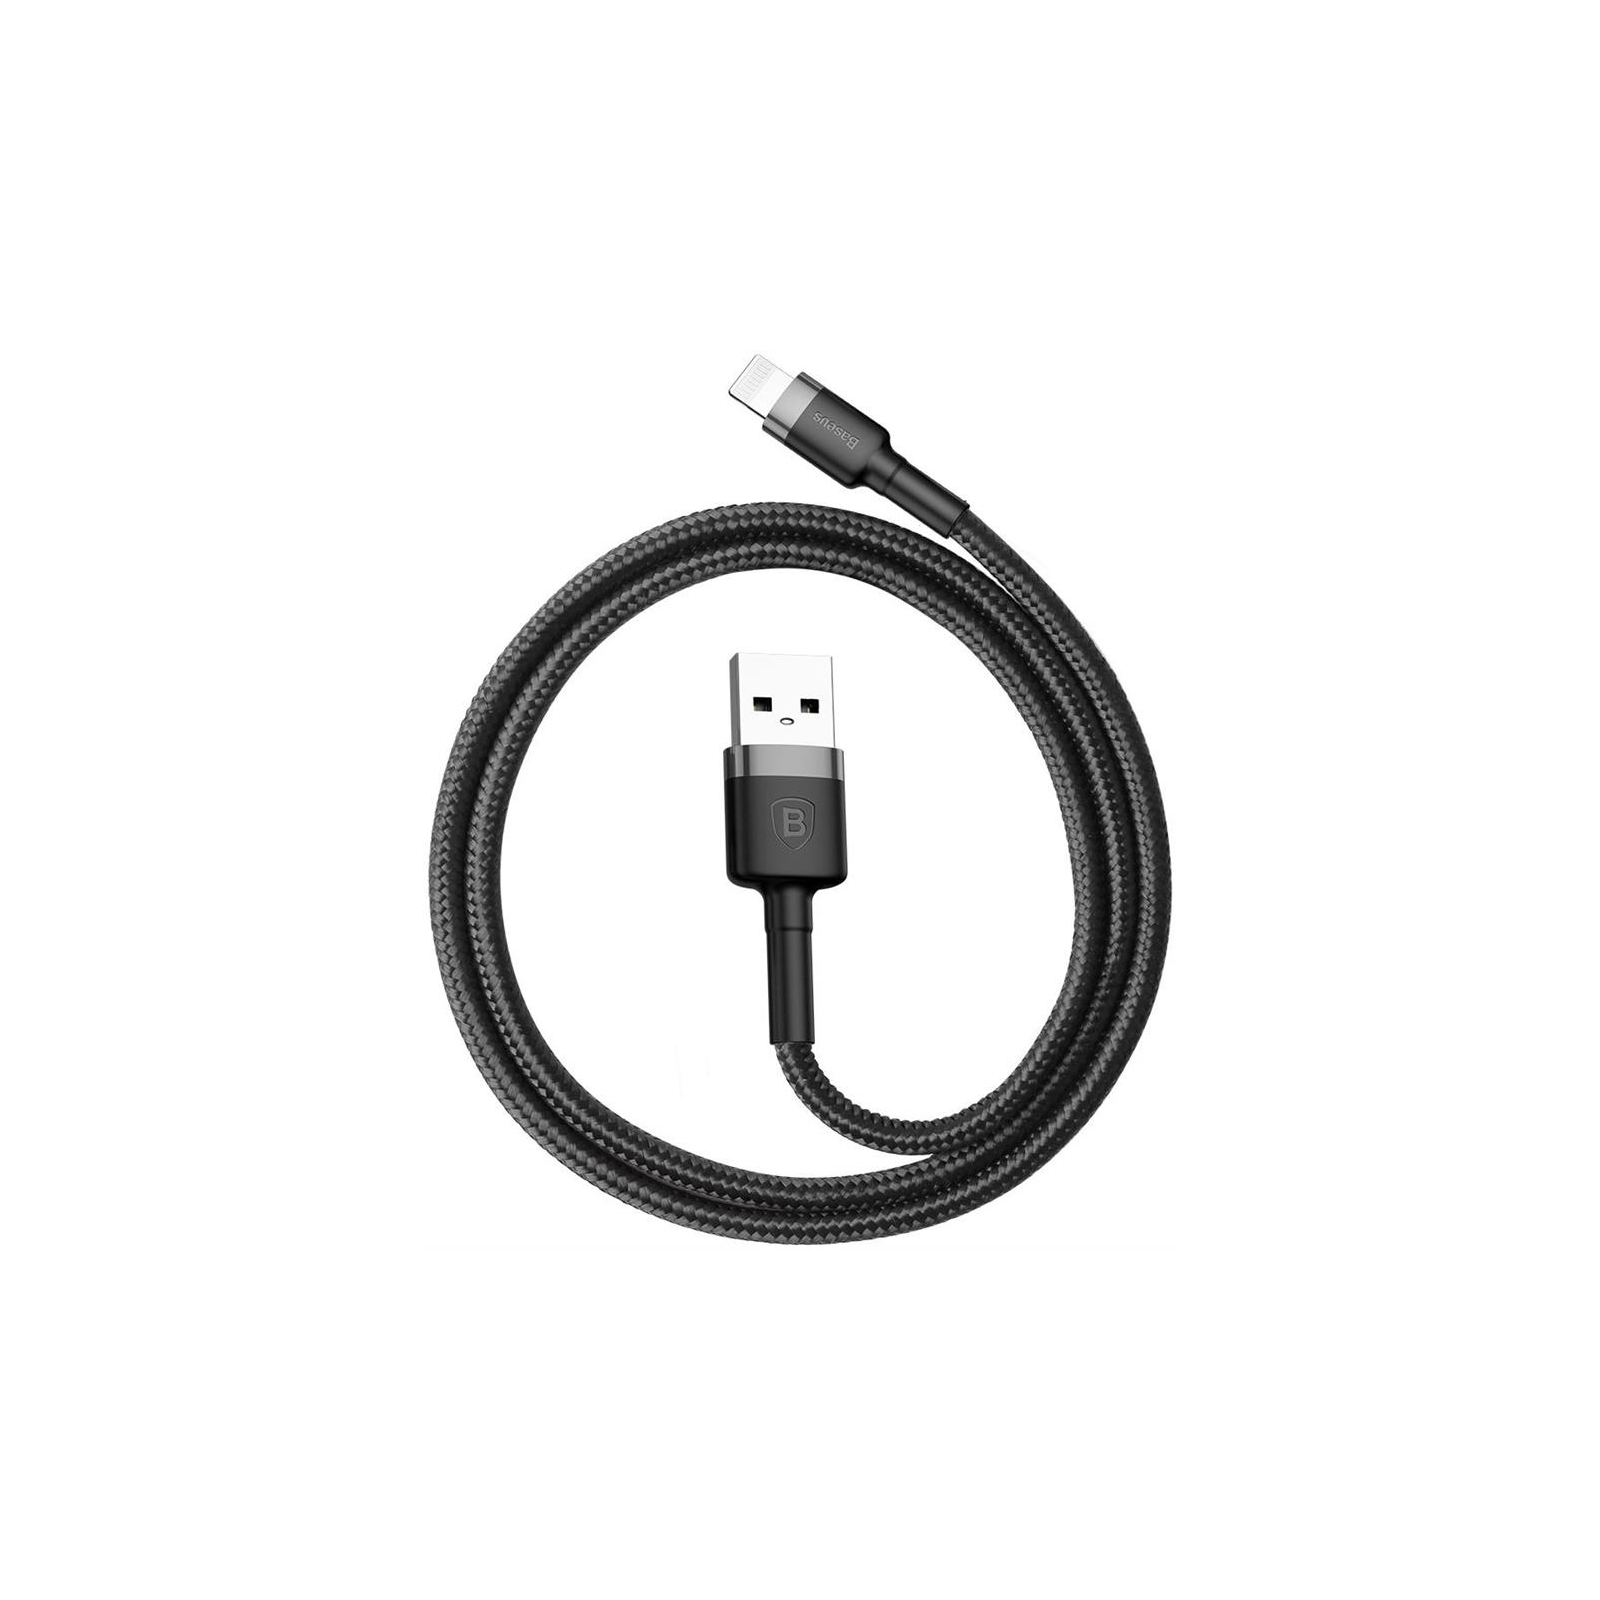 Дата кабель USB 2.0 AM to Lightning 0.5m Cafule 2.4A grey+black Baseus (CALKLF-AG1) изображение 4